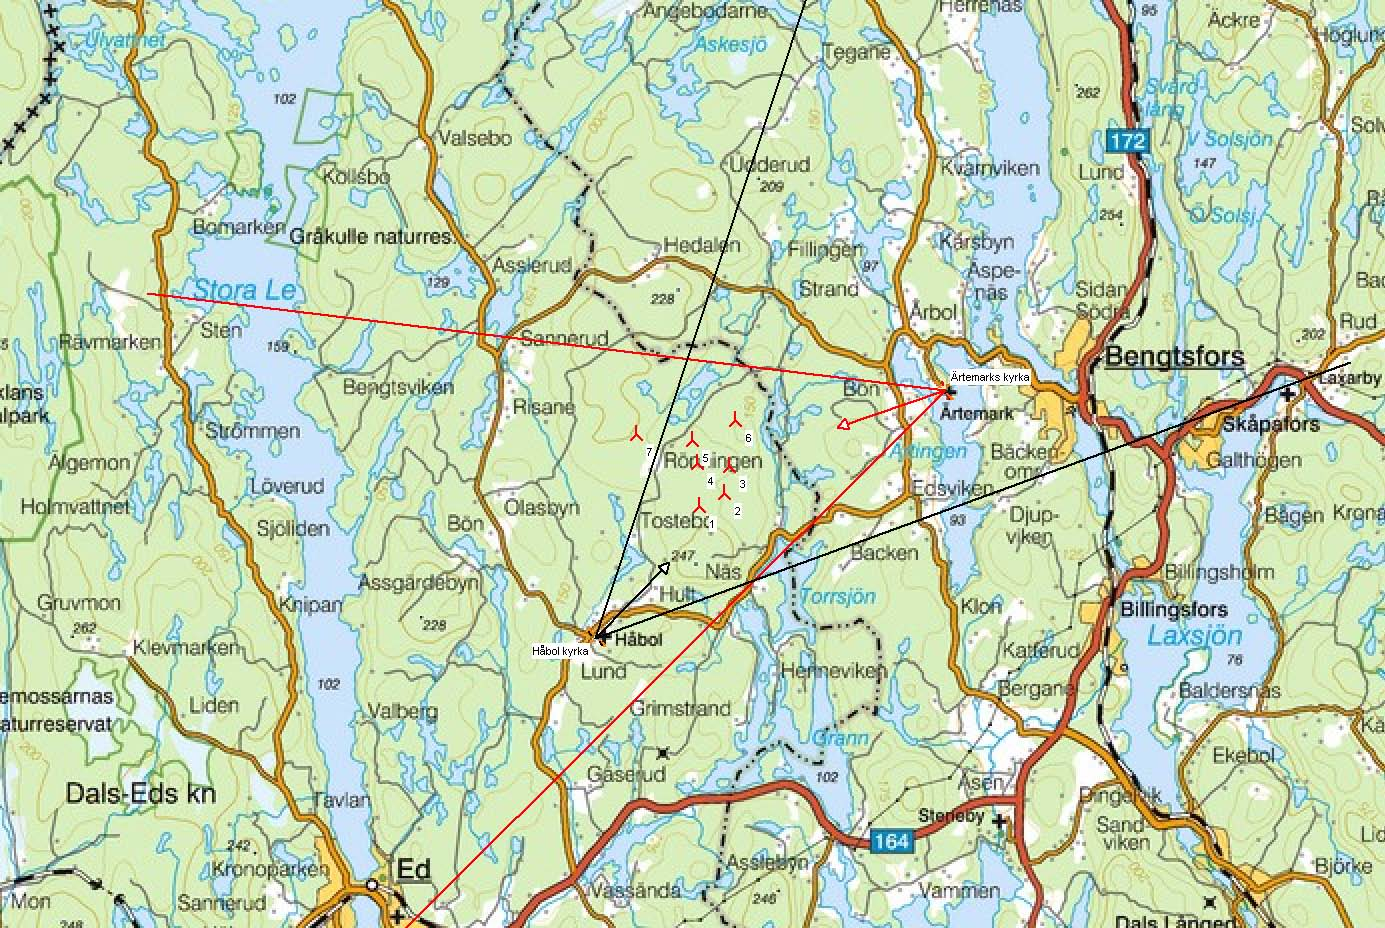 Fotopunkter Kartan till vänster visar omfånget från fotopunkterna vid Håbol kyrkan och